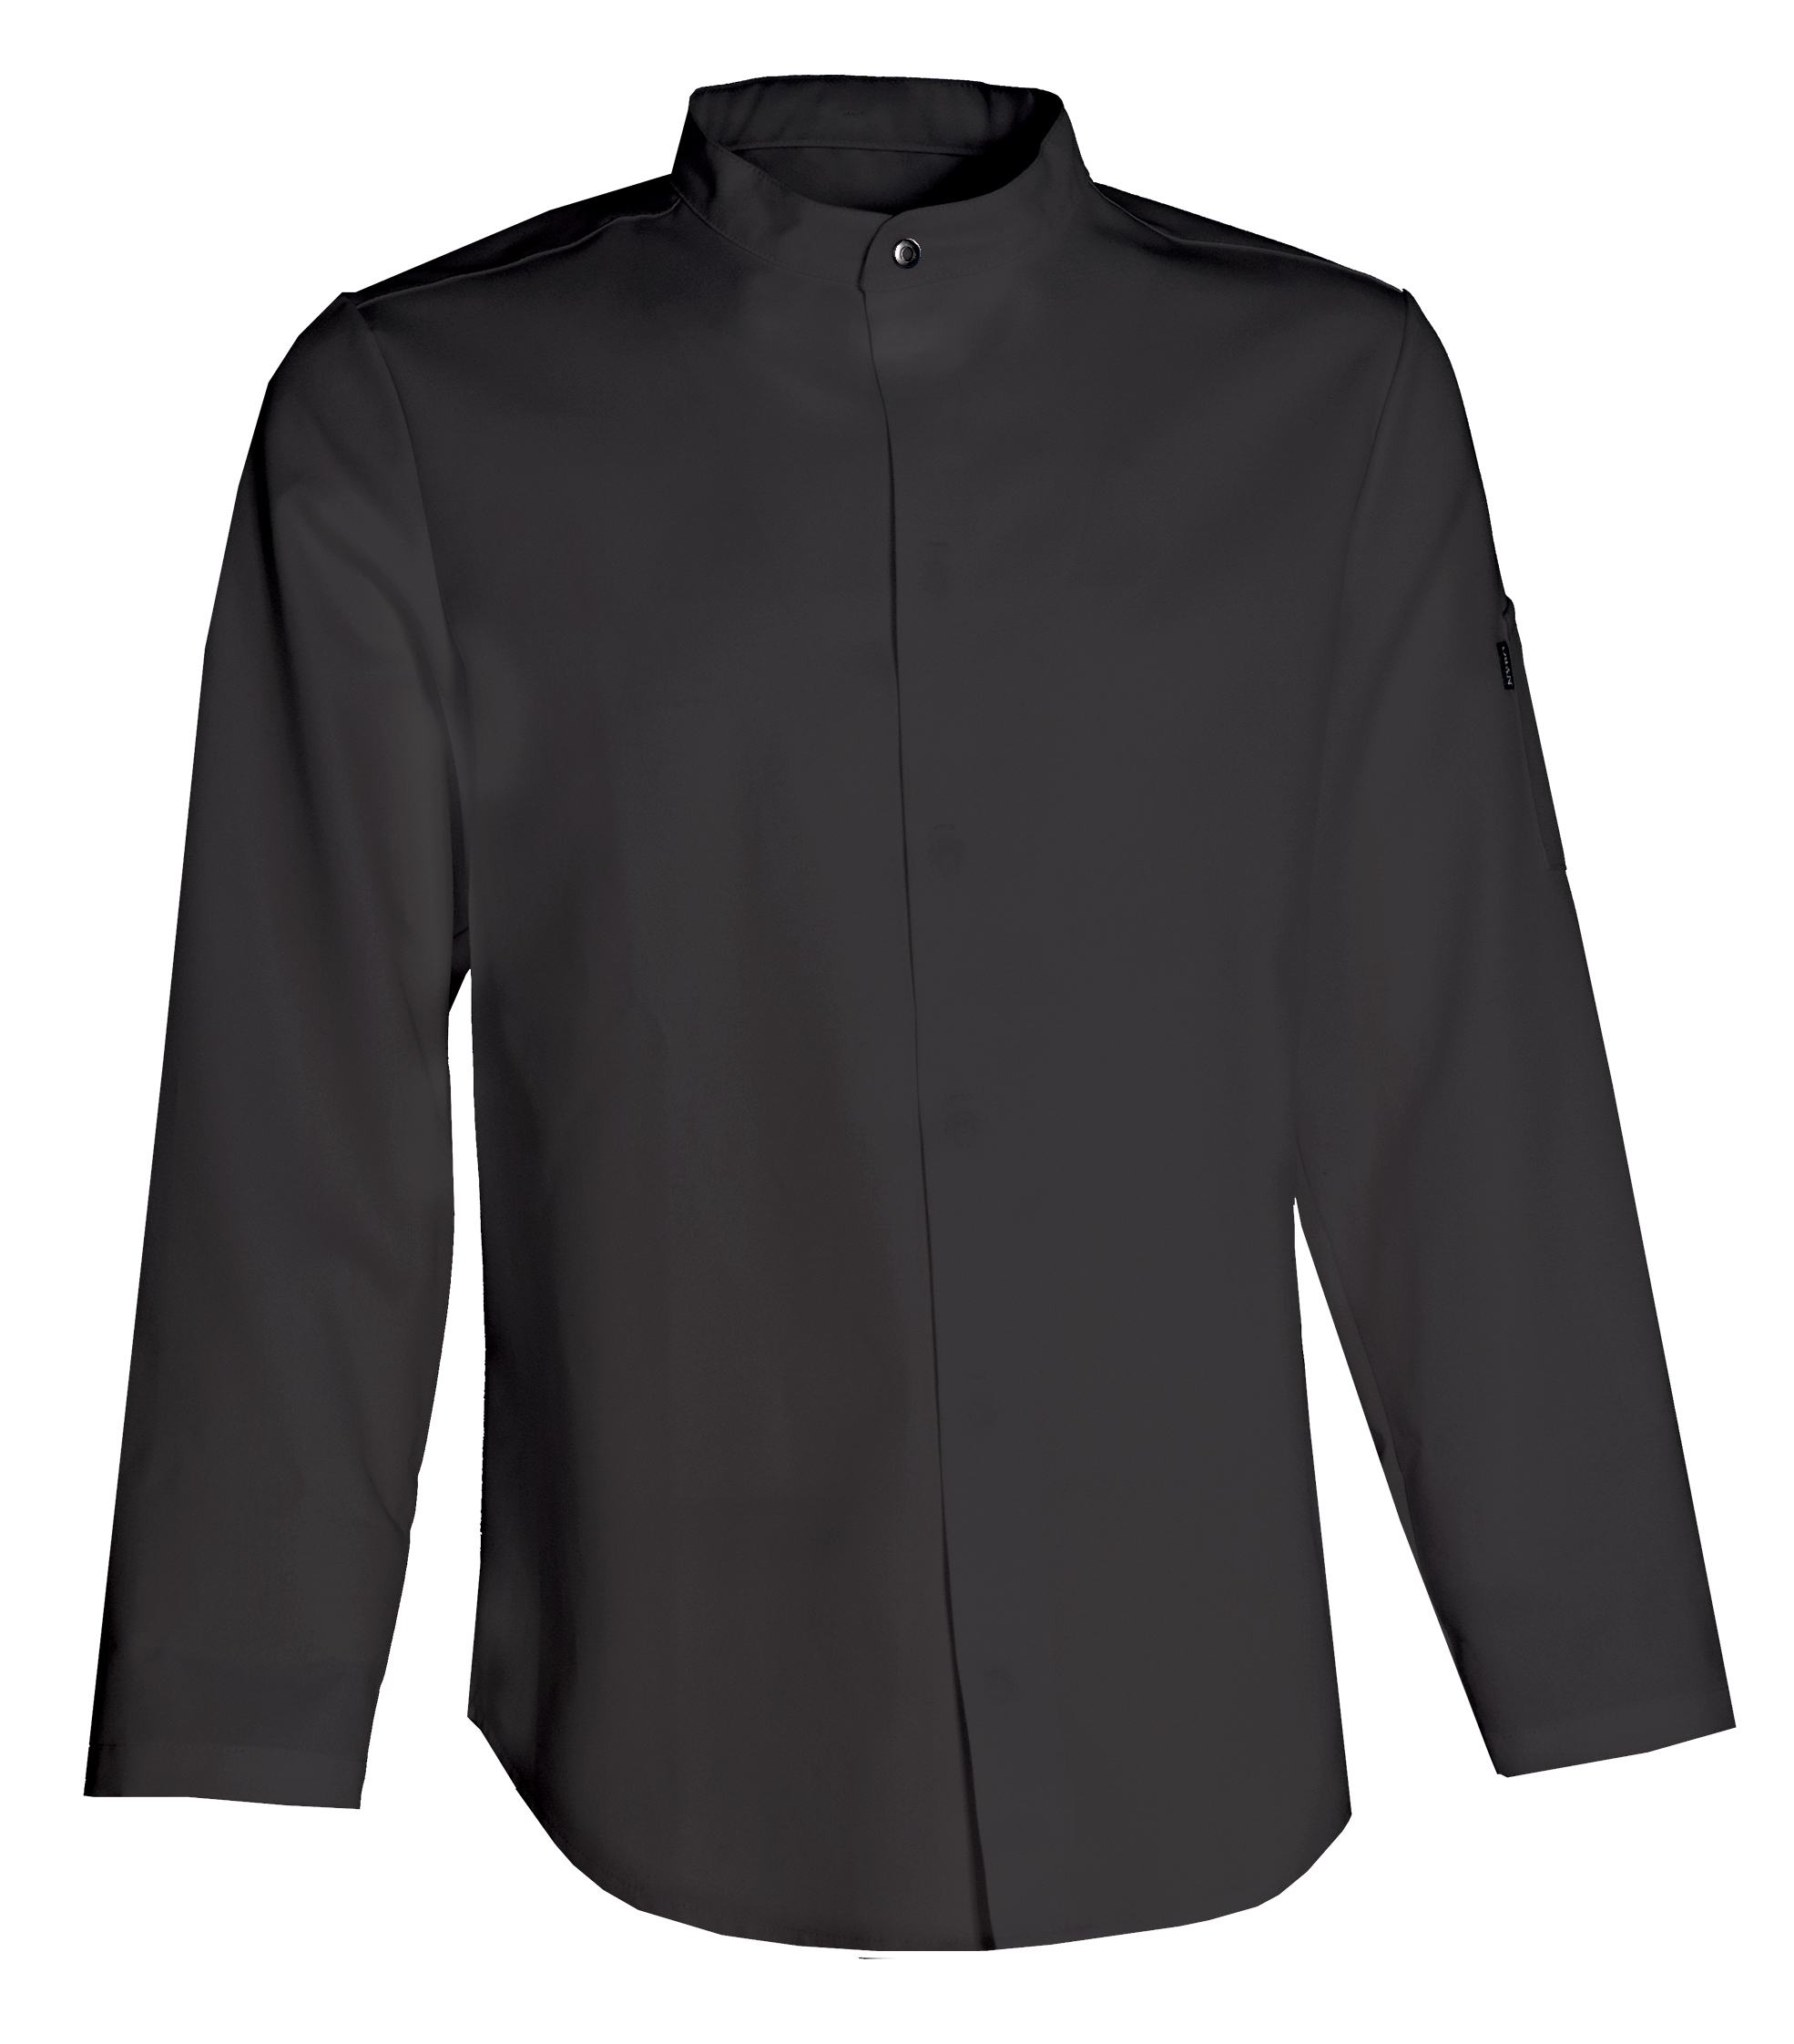 Unisex chef jacket with long sleeve, Essence (5010181)